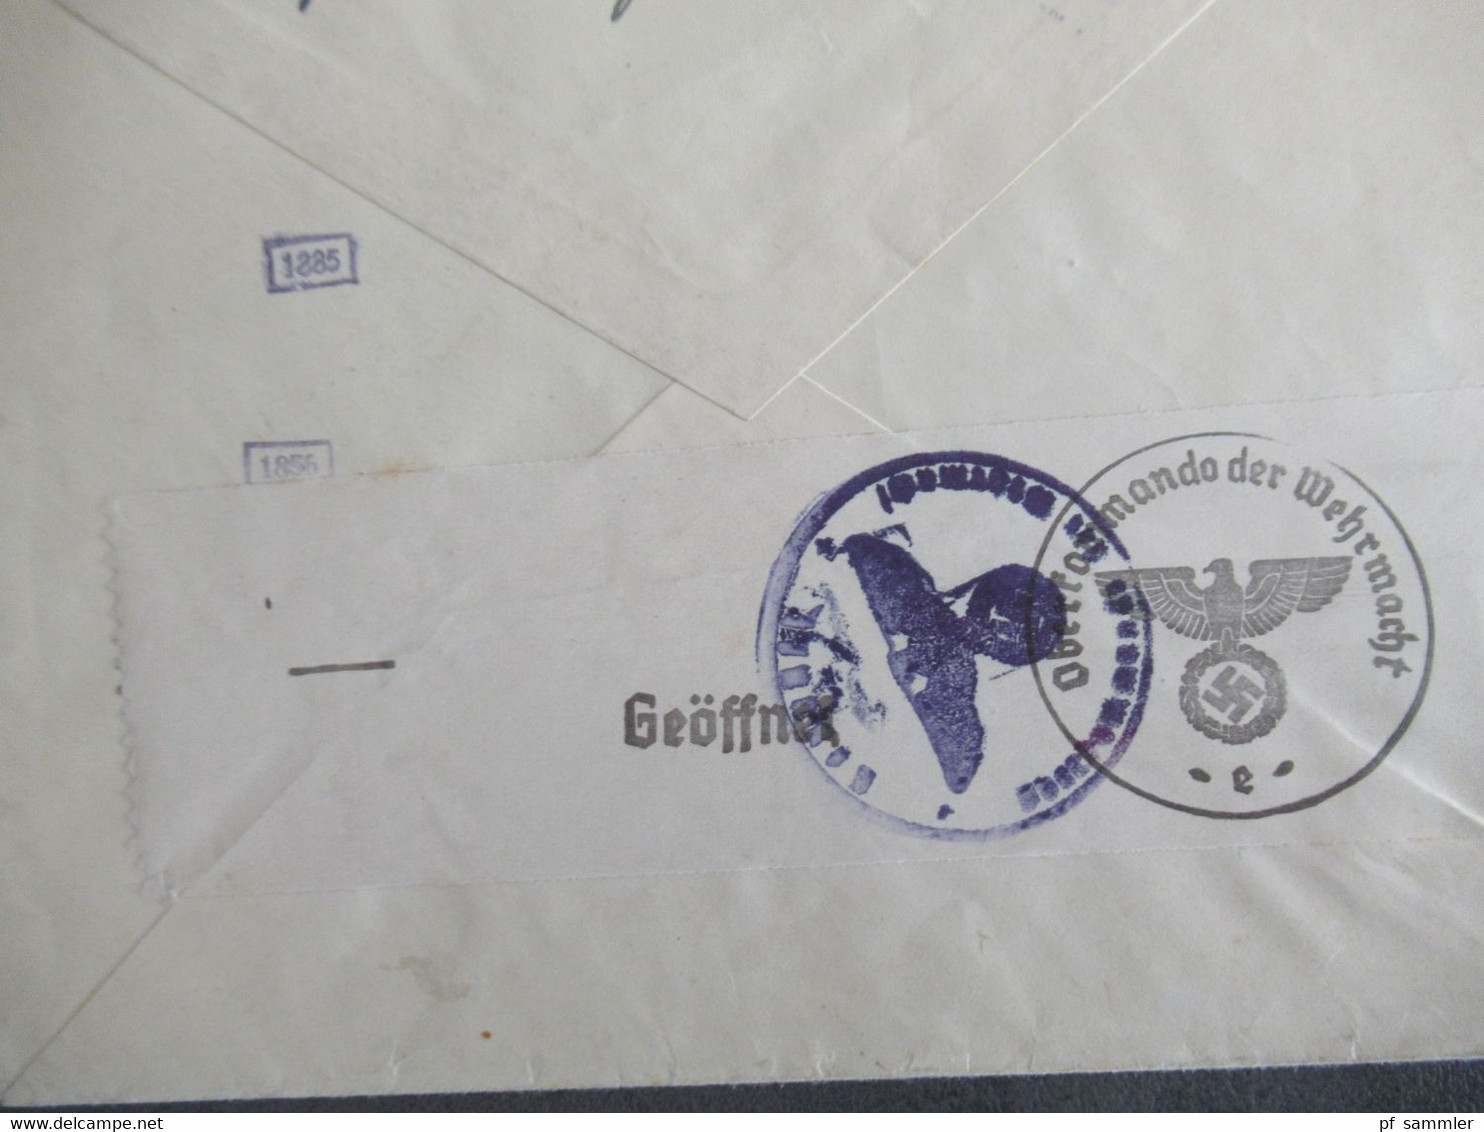 Böhmen Und Mähren Nr.32 EF Auslandsbrief Luzern Schweiz Mit OKW Zensur / Mehrfachzensur Zensurstempel / Zensurstreifen - Covers & Documents